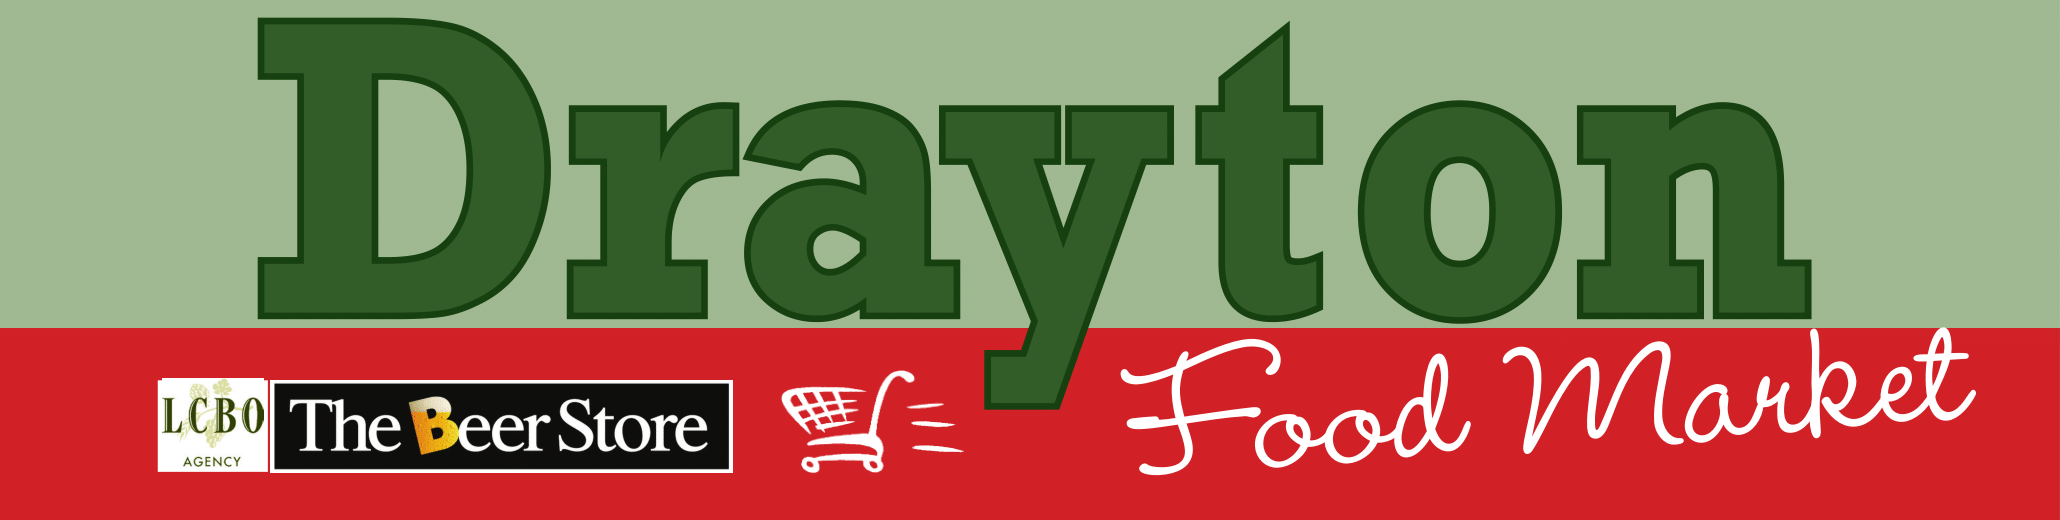 Drayton Food Market logo pdf format-1.png